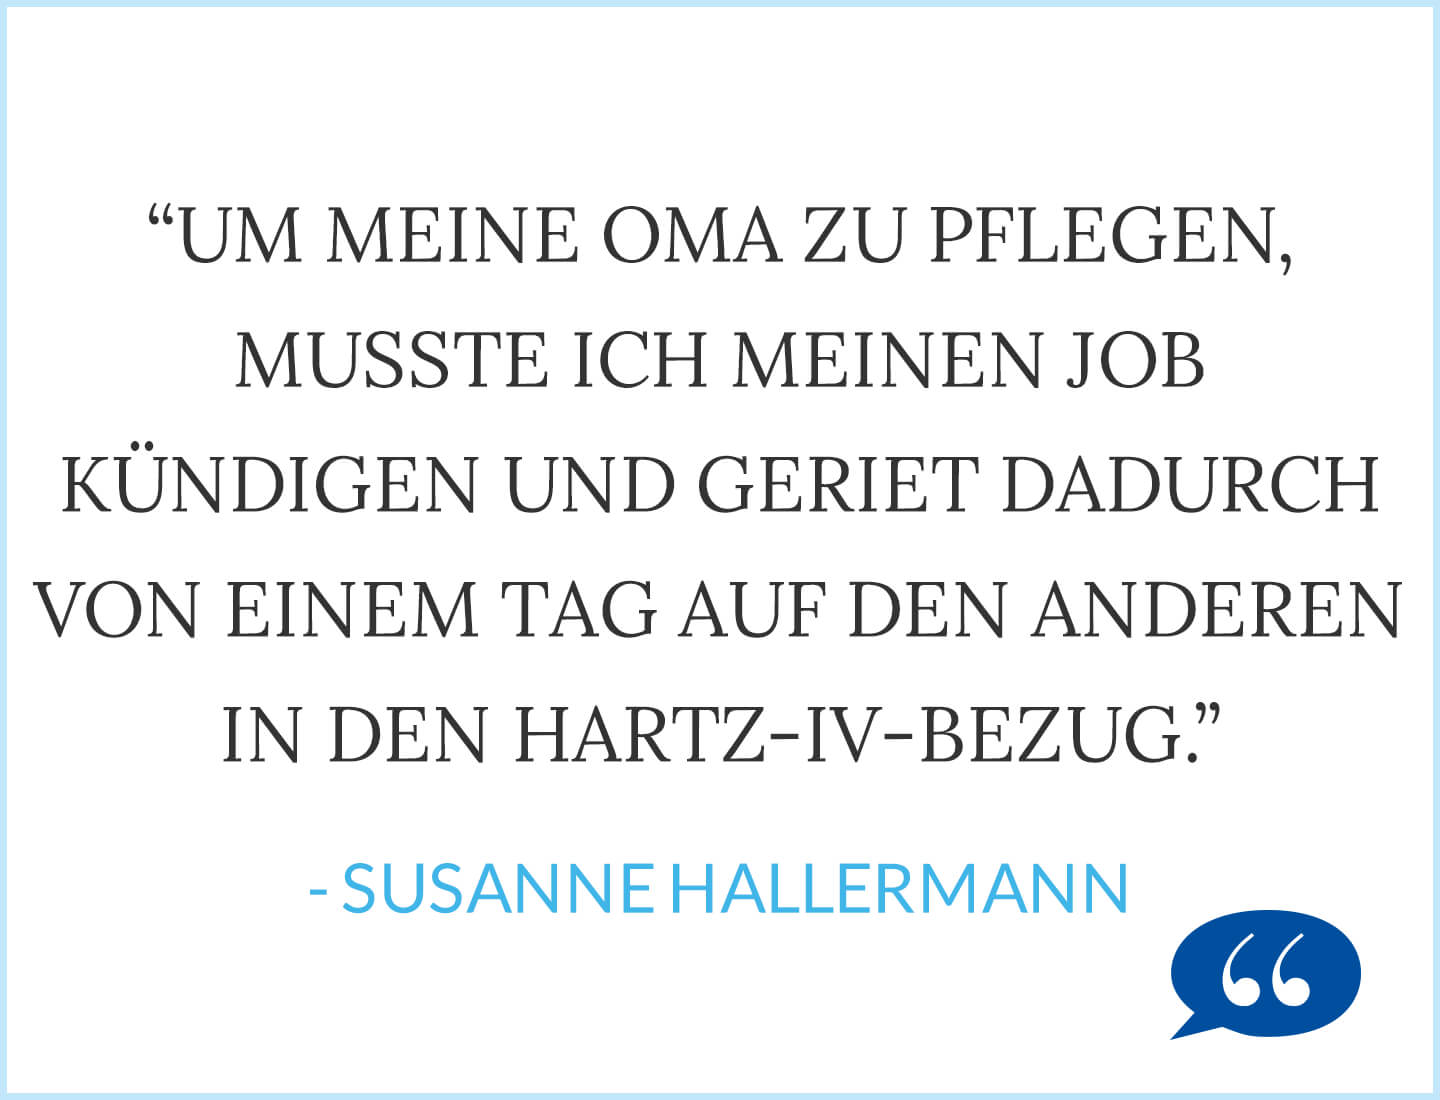 Um meine Oma zu pflegen, musste ich meinen Job kündigen und geriet dadurch von einem Tag aufden anderen in den Hartz-IV-Bezug. - Susanne Hallermann